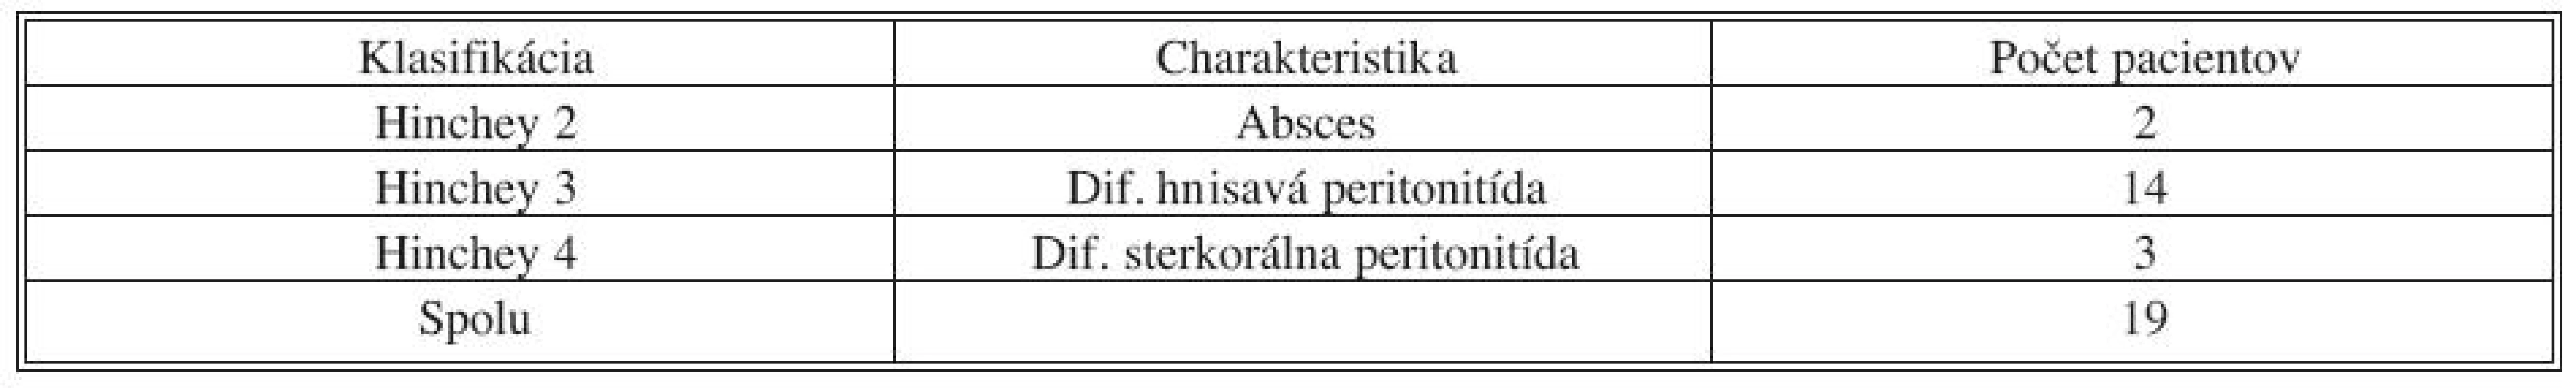 Rozdelenie komplikovanej divertikulitídy podľa Hincheyho (IV. chirurgická klinika LF UKo a FNsP Bratislava, Slovenská republika, 2004–2008)
Tab. 3. Classification of complicated diverticulitis according to Hinchey